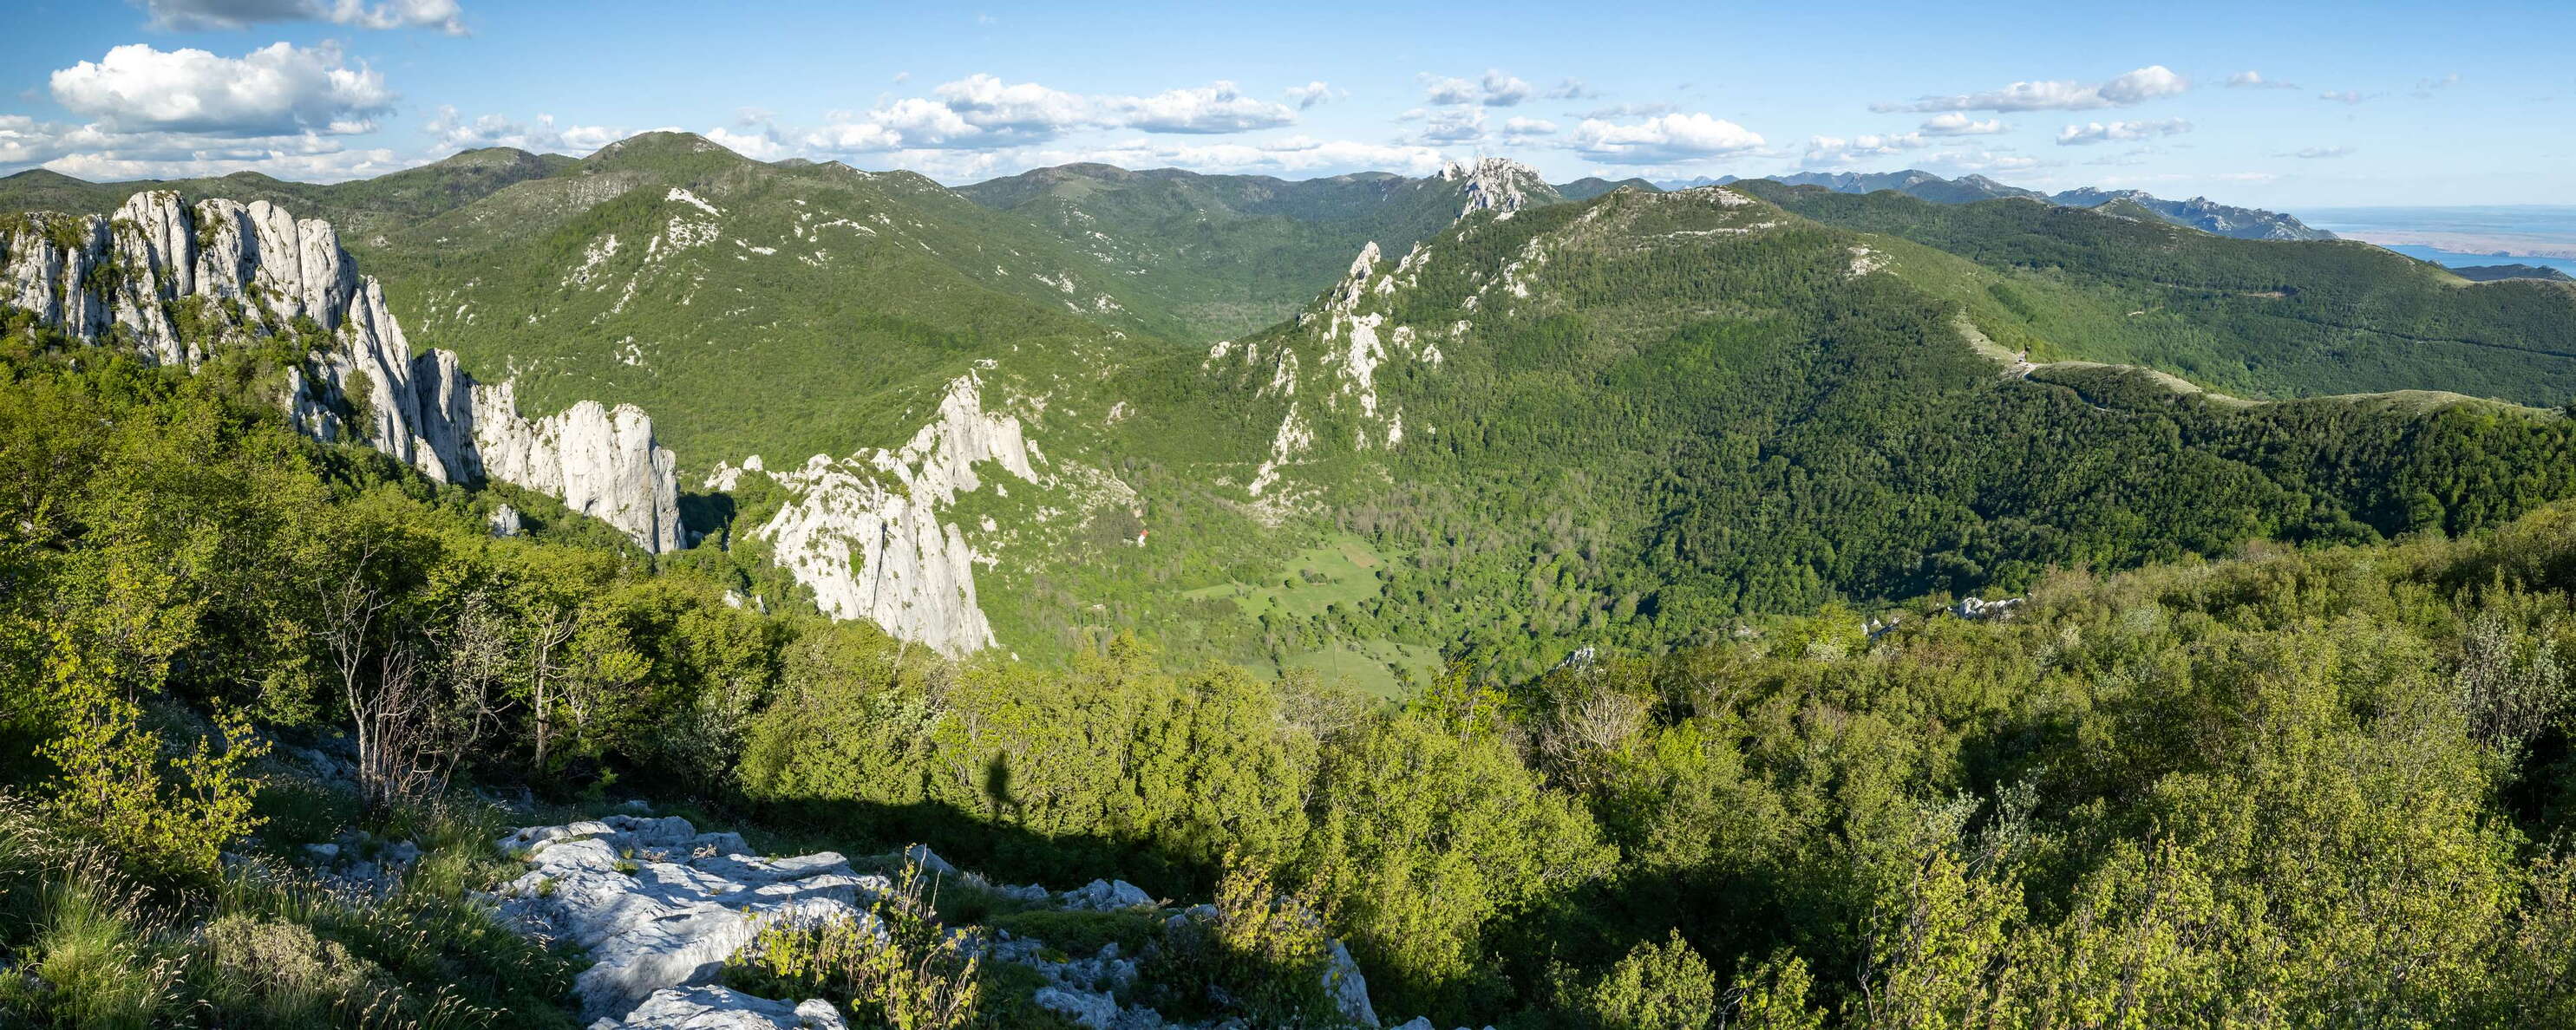 Velebit | Panoramic view with Ravni dabar and Crni dabar